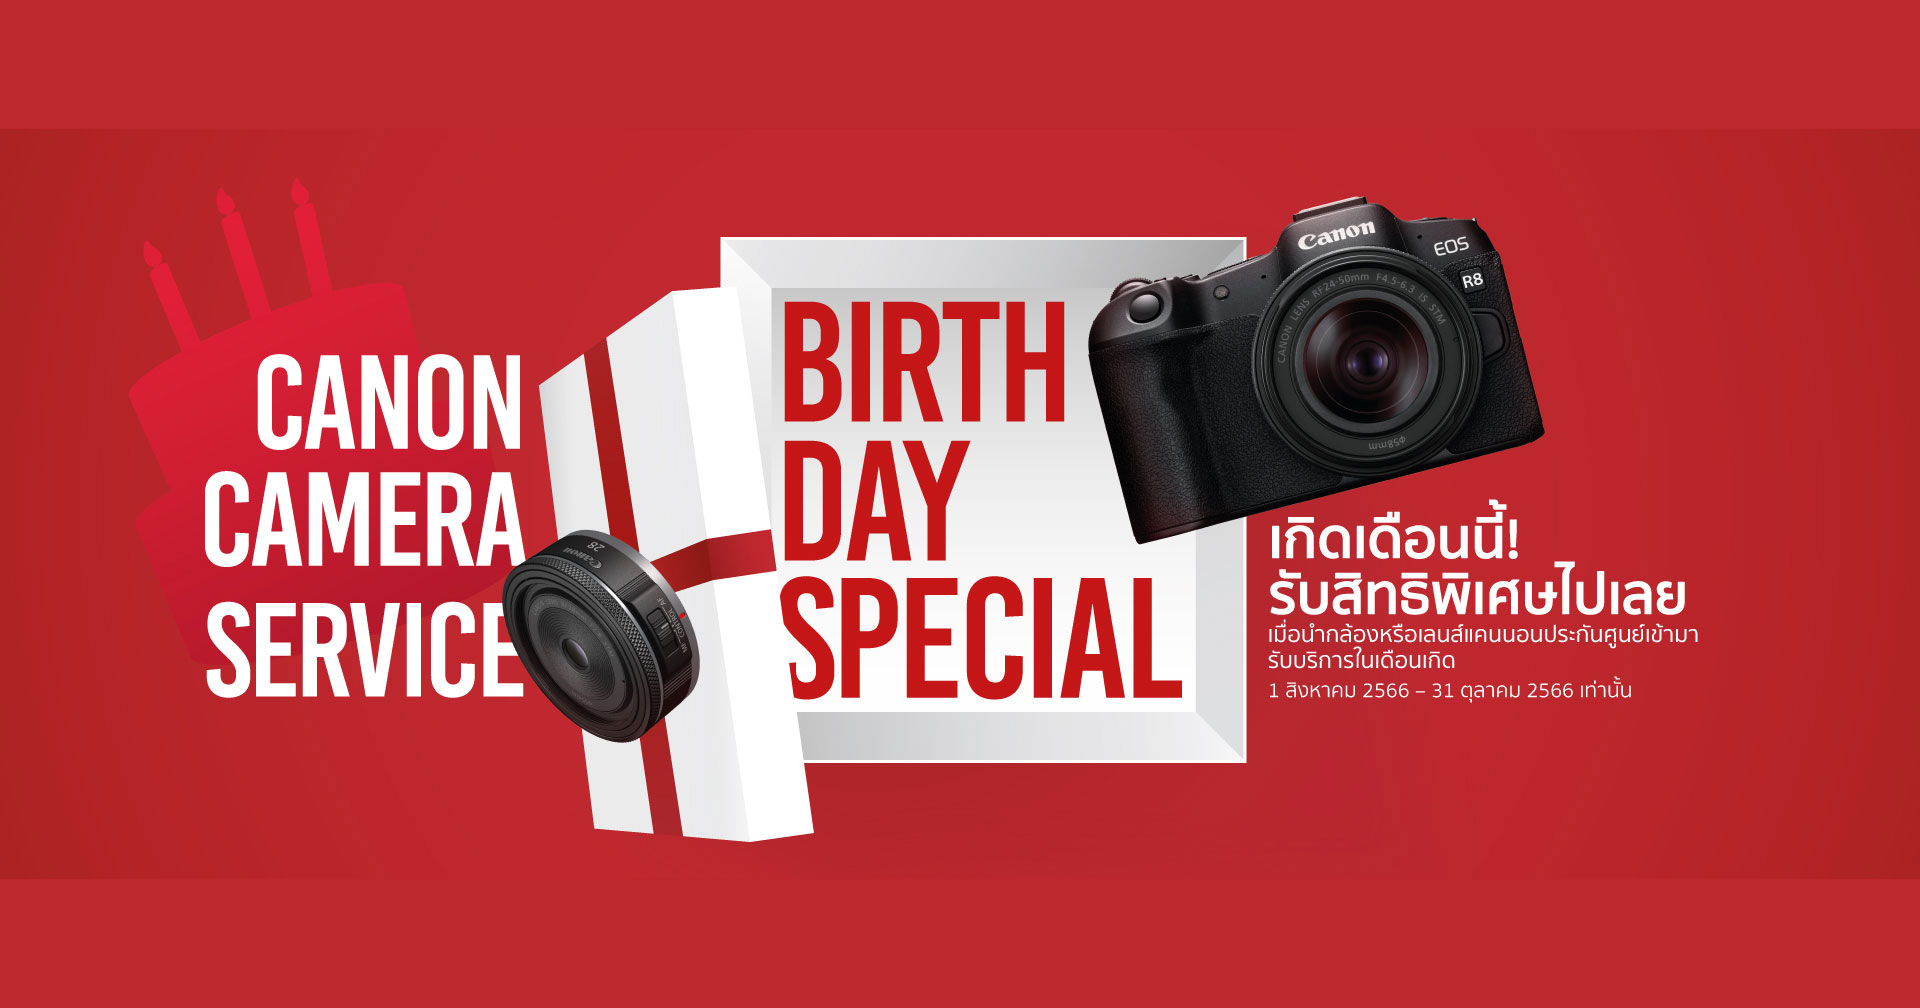 แคมเปญโดนใจช่างภาพ ‘Canon Camera Service Birthday Special’ มอบส่วนลดค่าบริการและซ่อมด่วนฟรีในเดือนเกิด